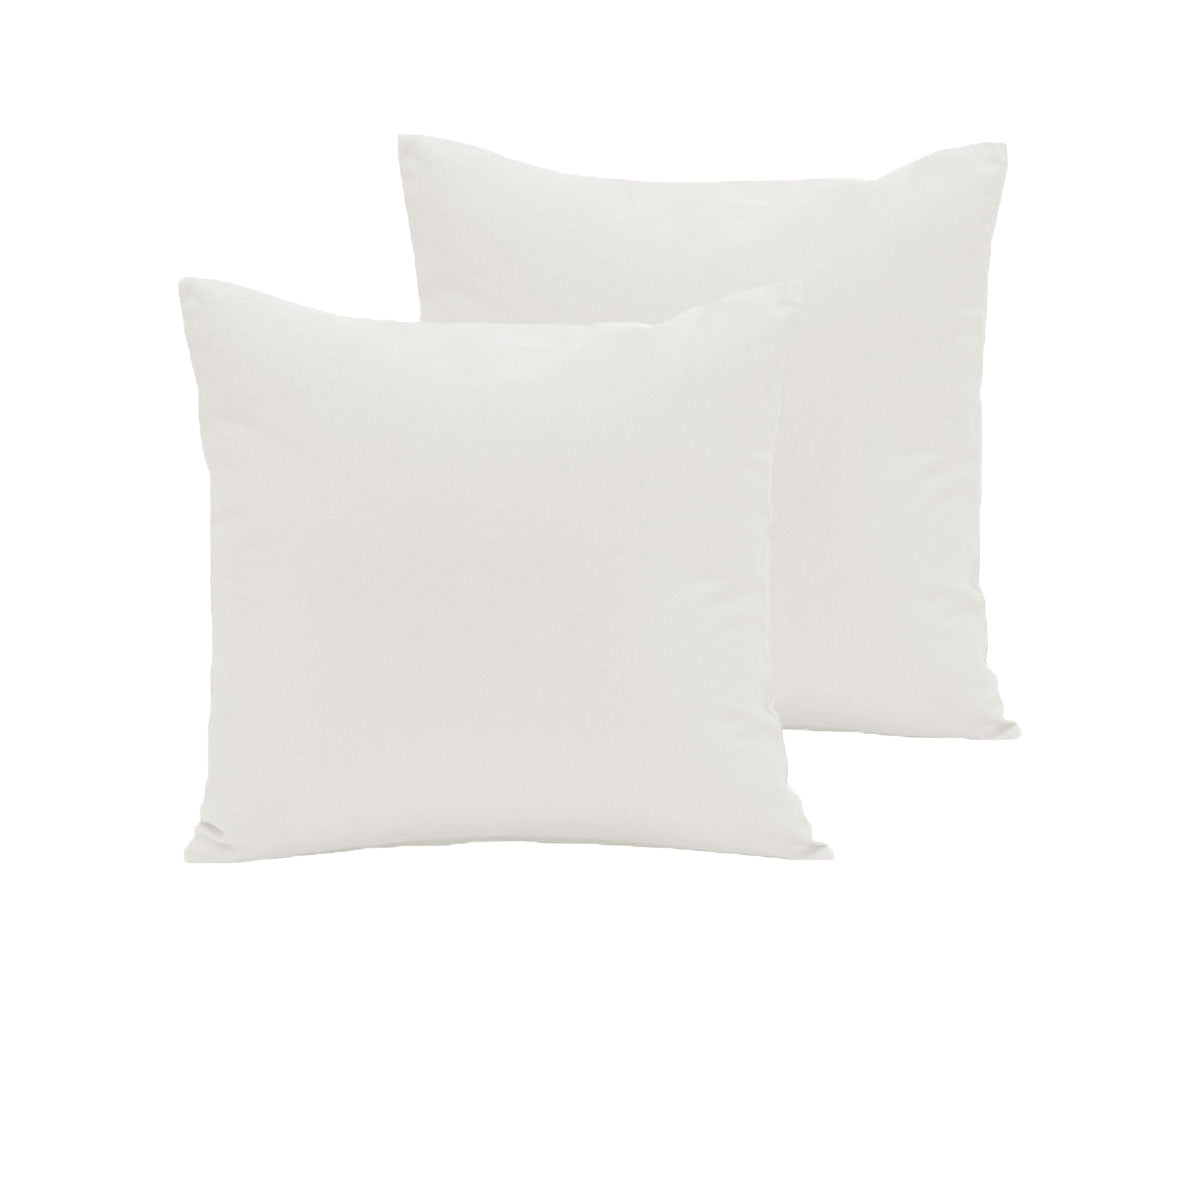 Pair of  280TC Polyester Cotton European Pillowcases Ivory